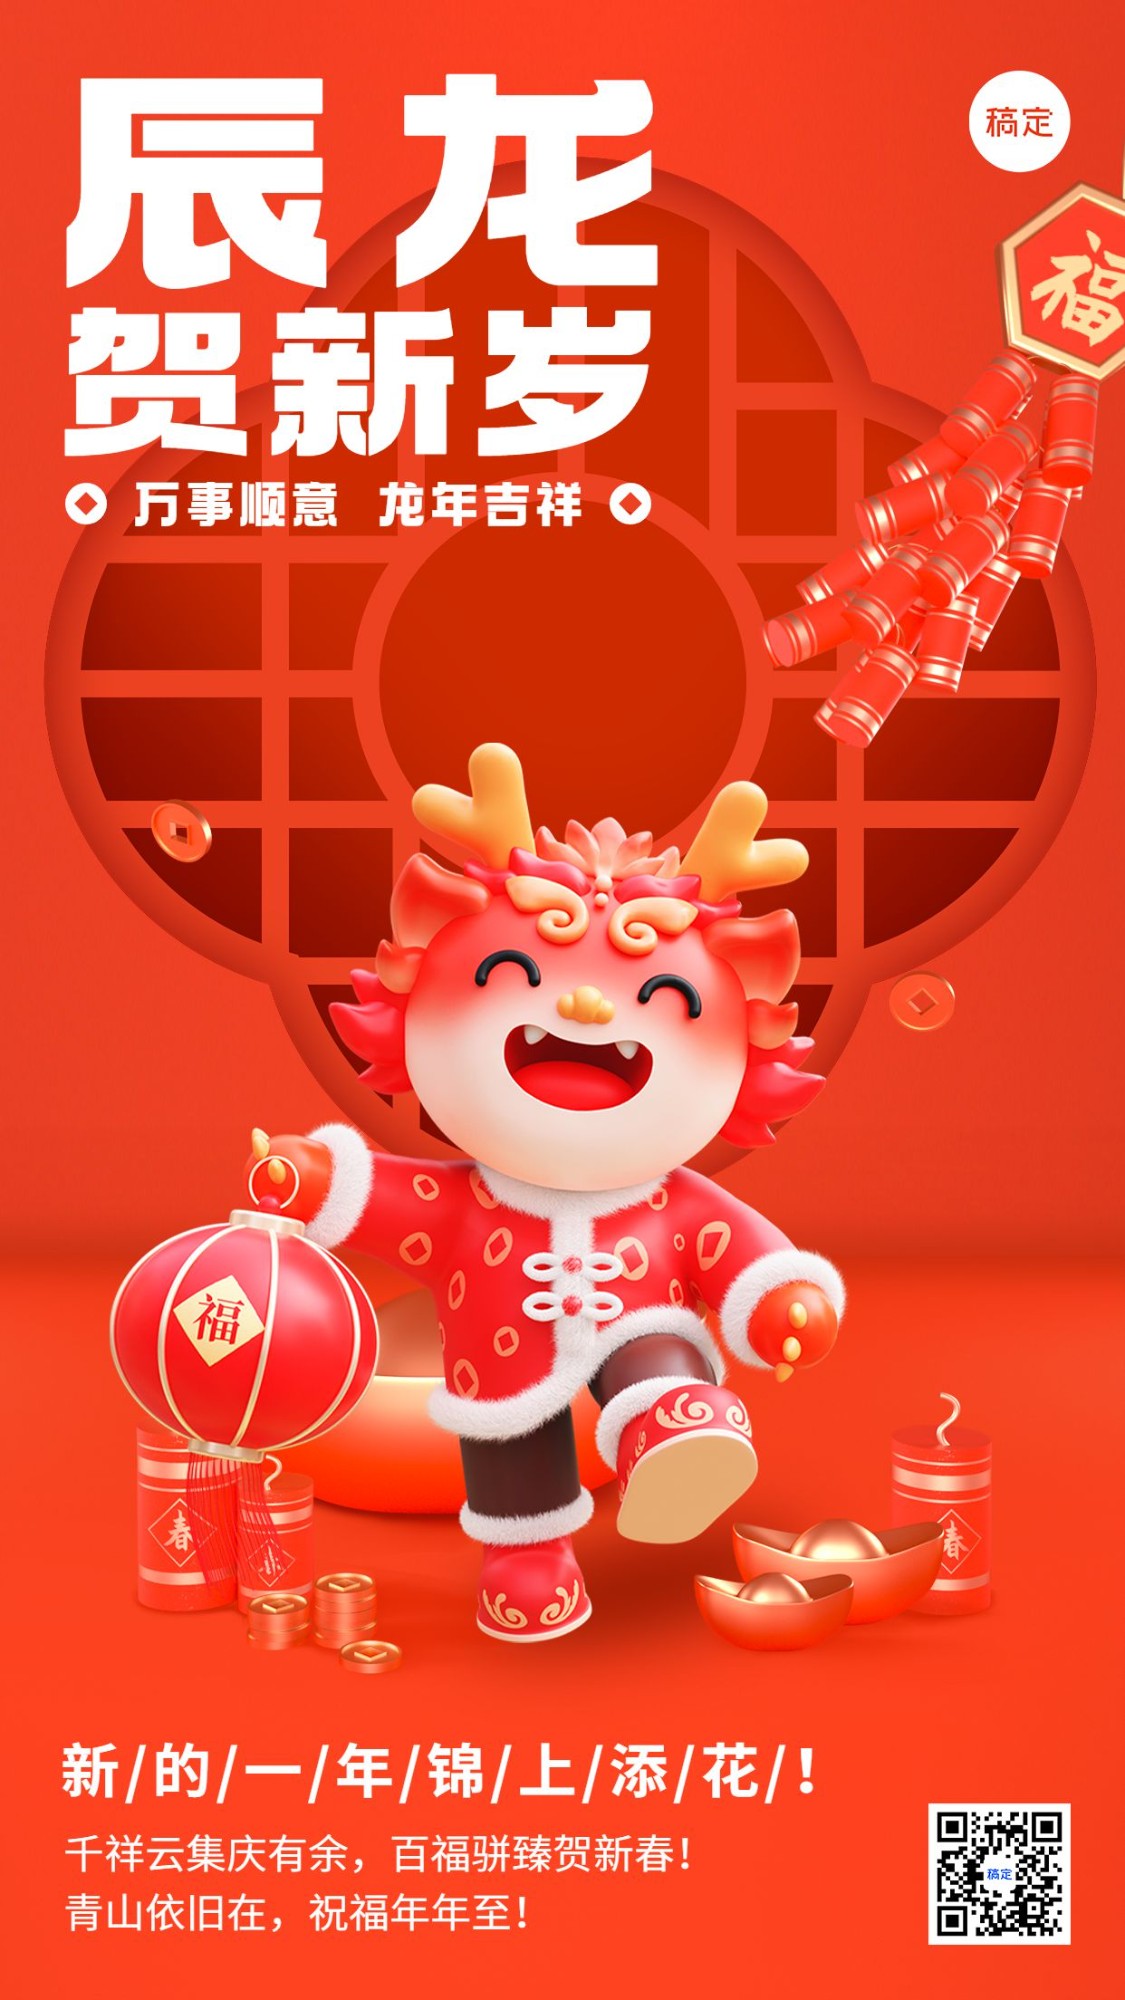 春节新年祝福3d龙元素手机海报